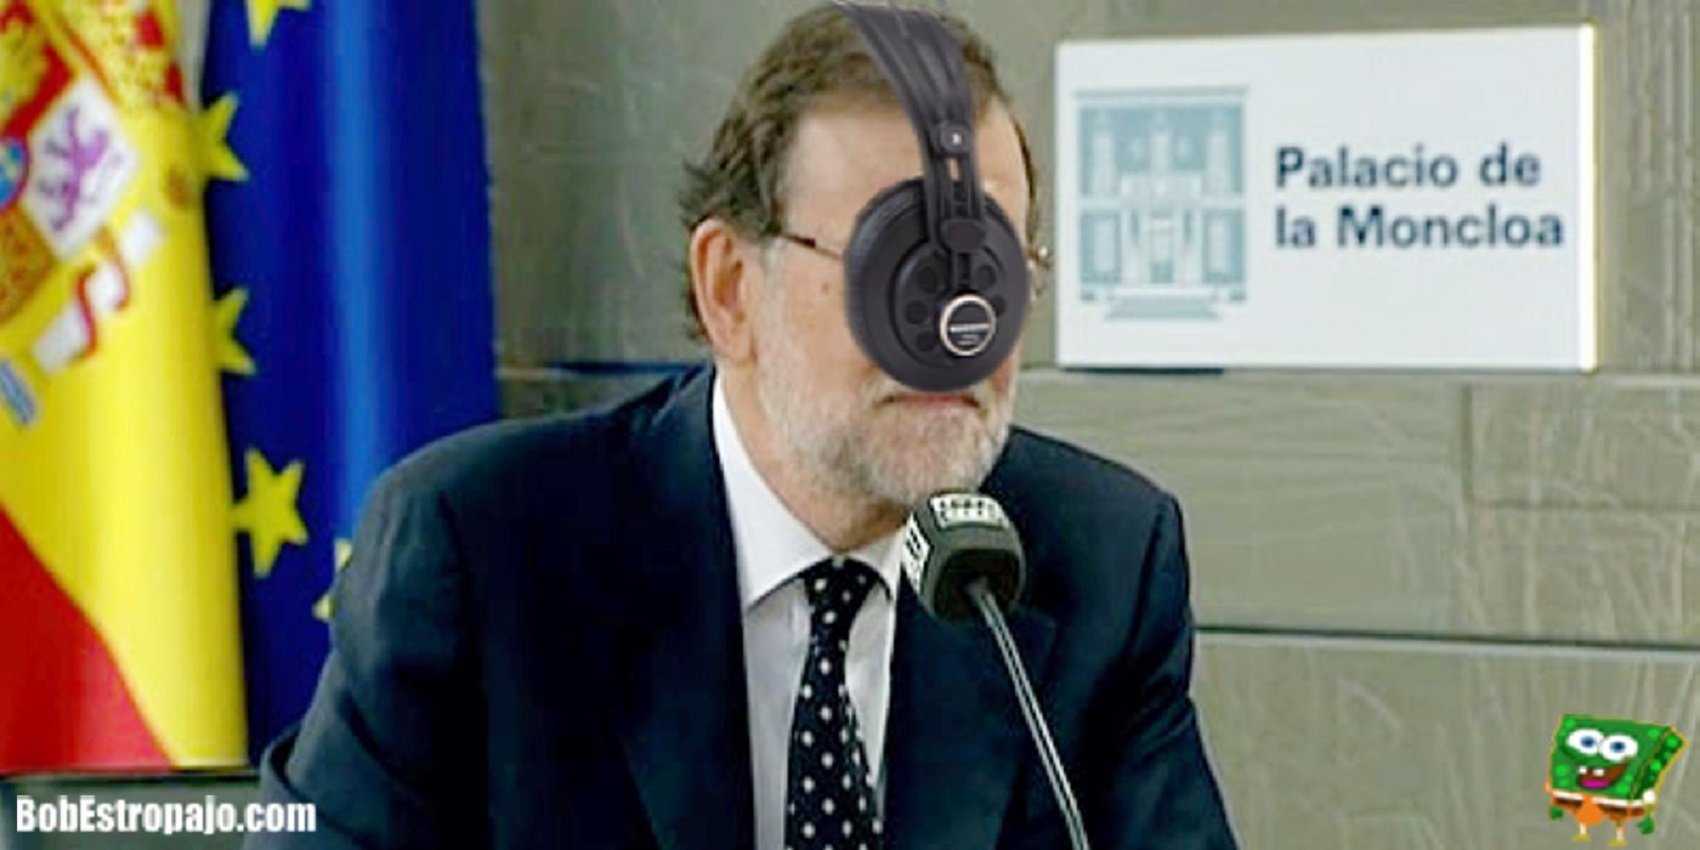 Entrada de incógnito y frases míticas... Así se mofa la red del testimonio de Rajoy